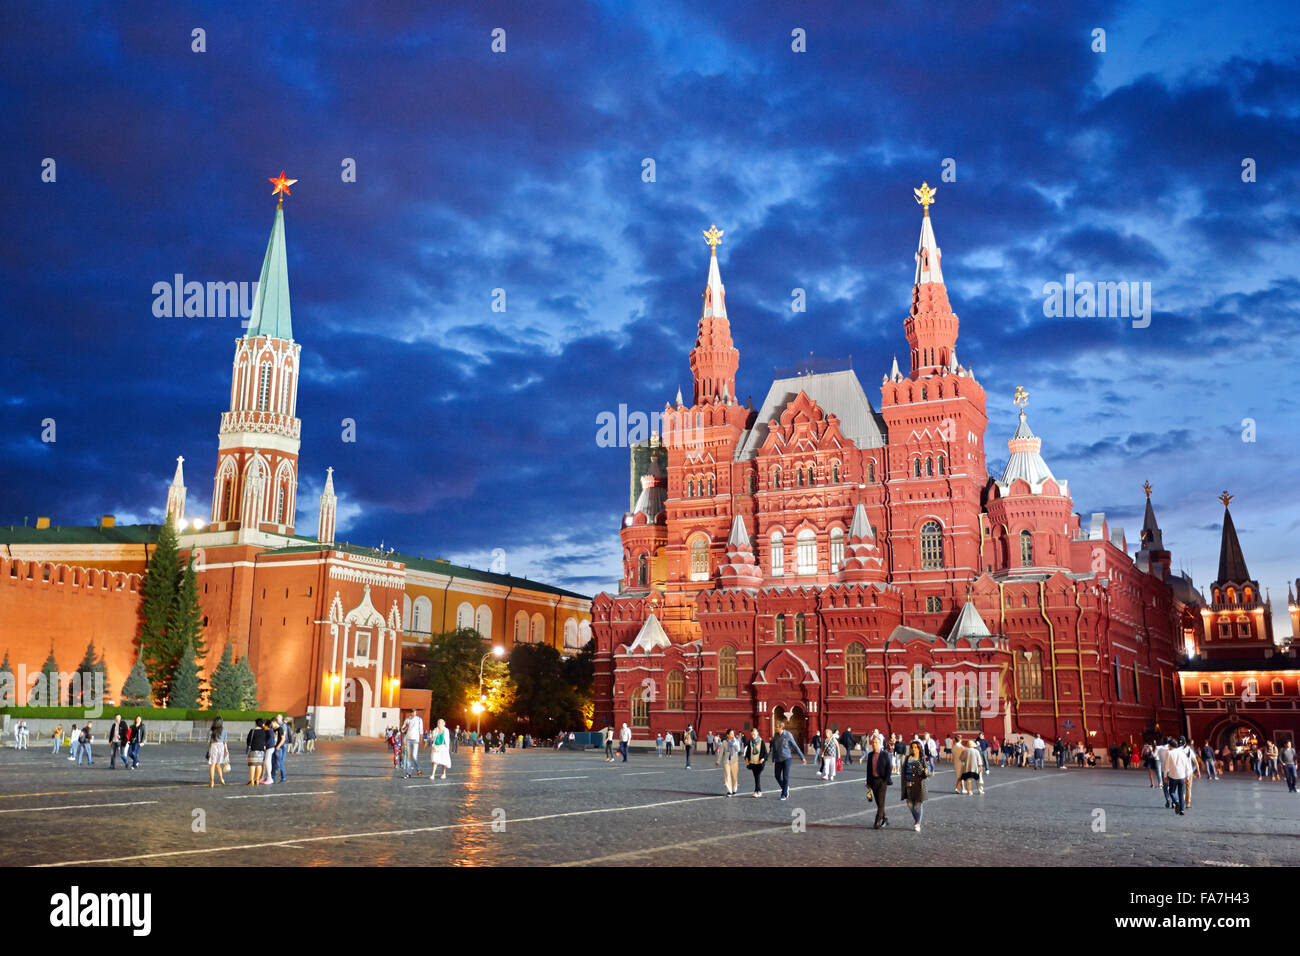 Menschen, die in der Abenddämmerung auf dem Roten Platz vor dem State Historical Museum spazieren gehen. Moskau, Russland. Stockfoto